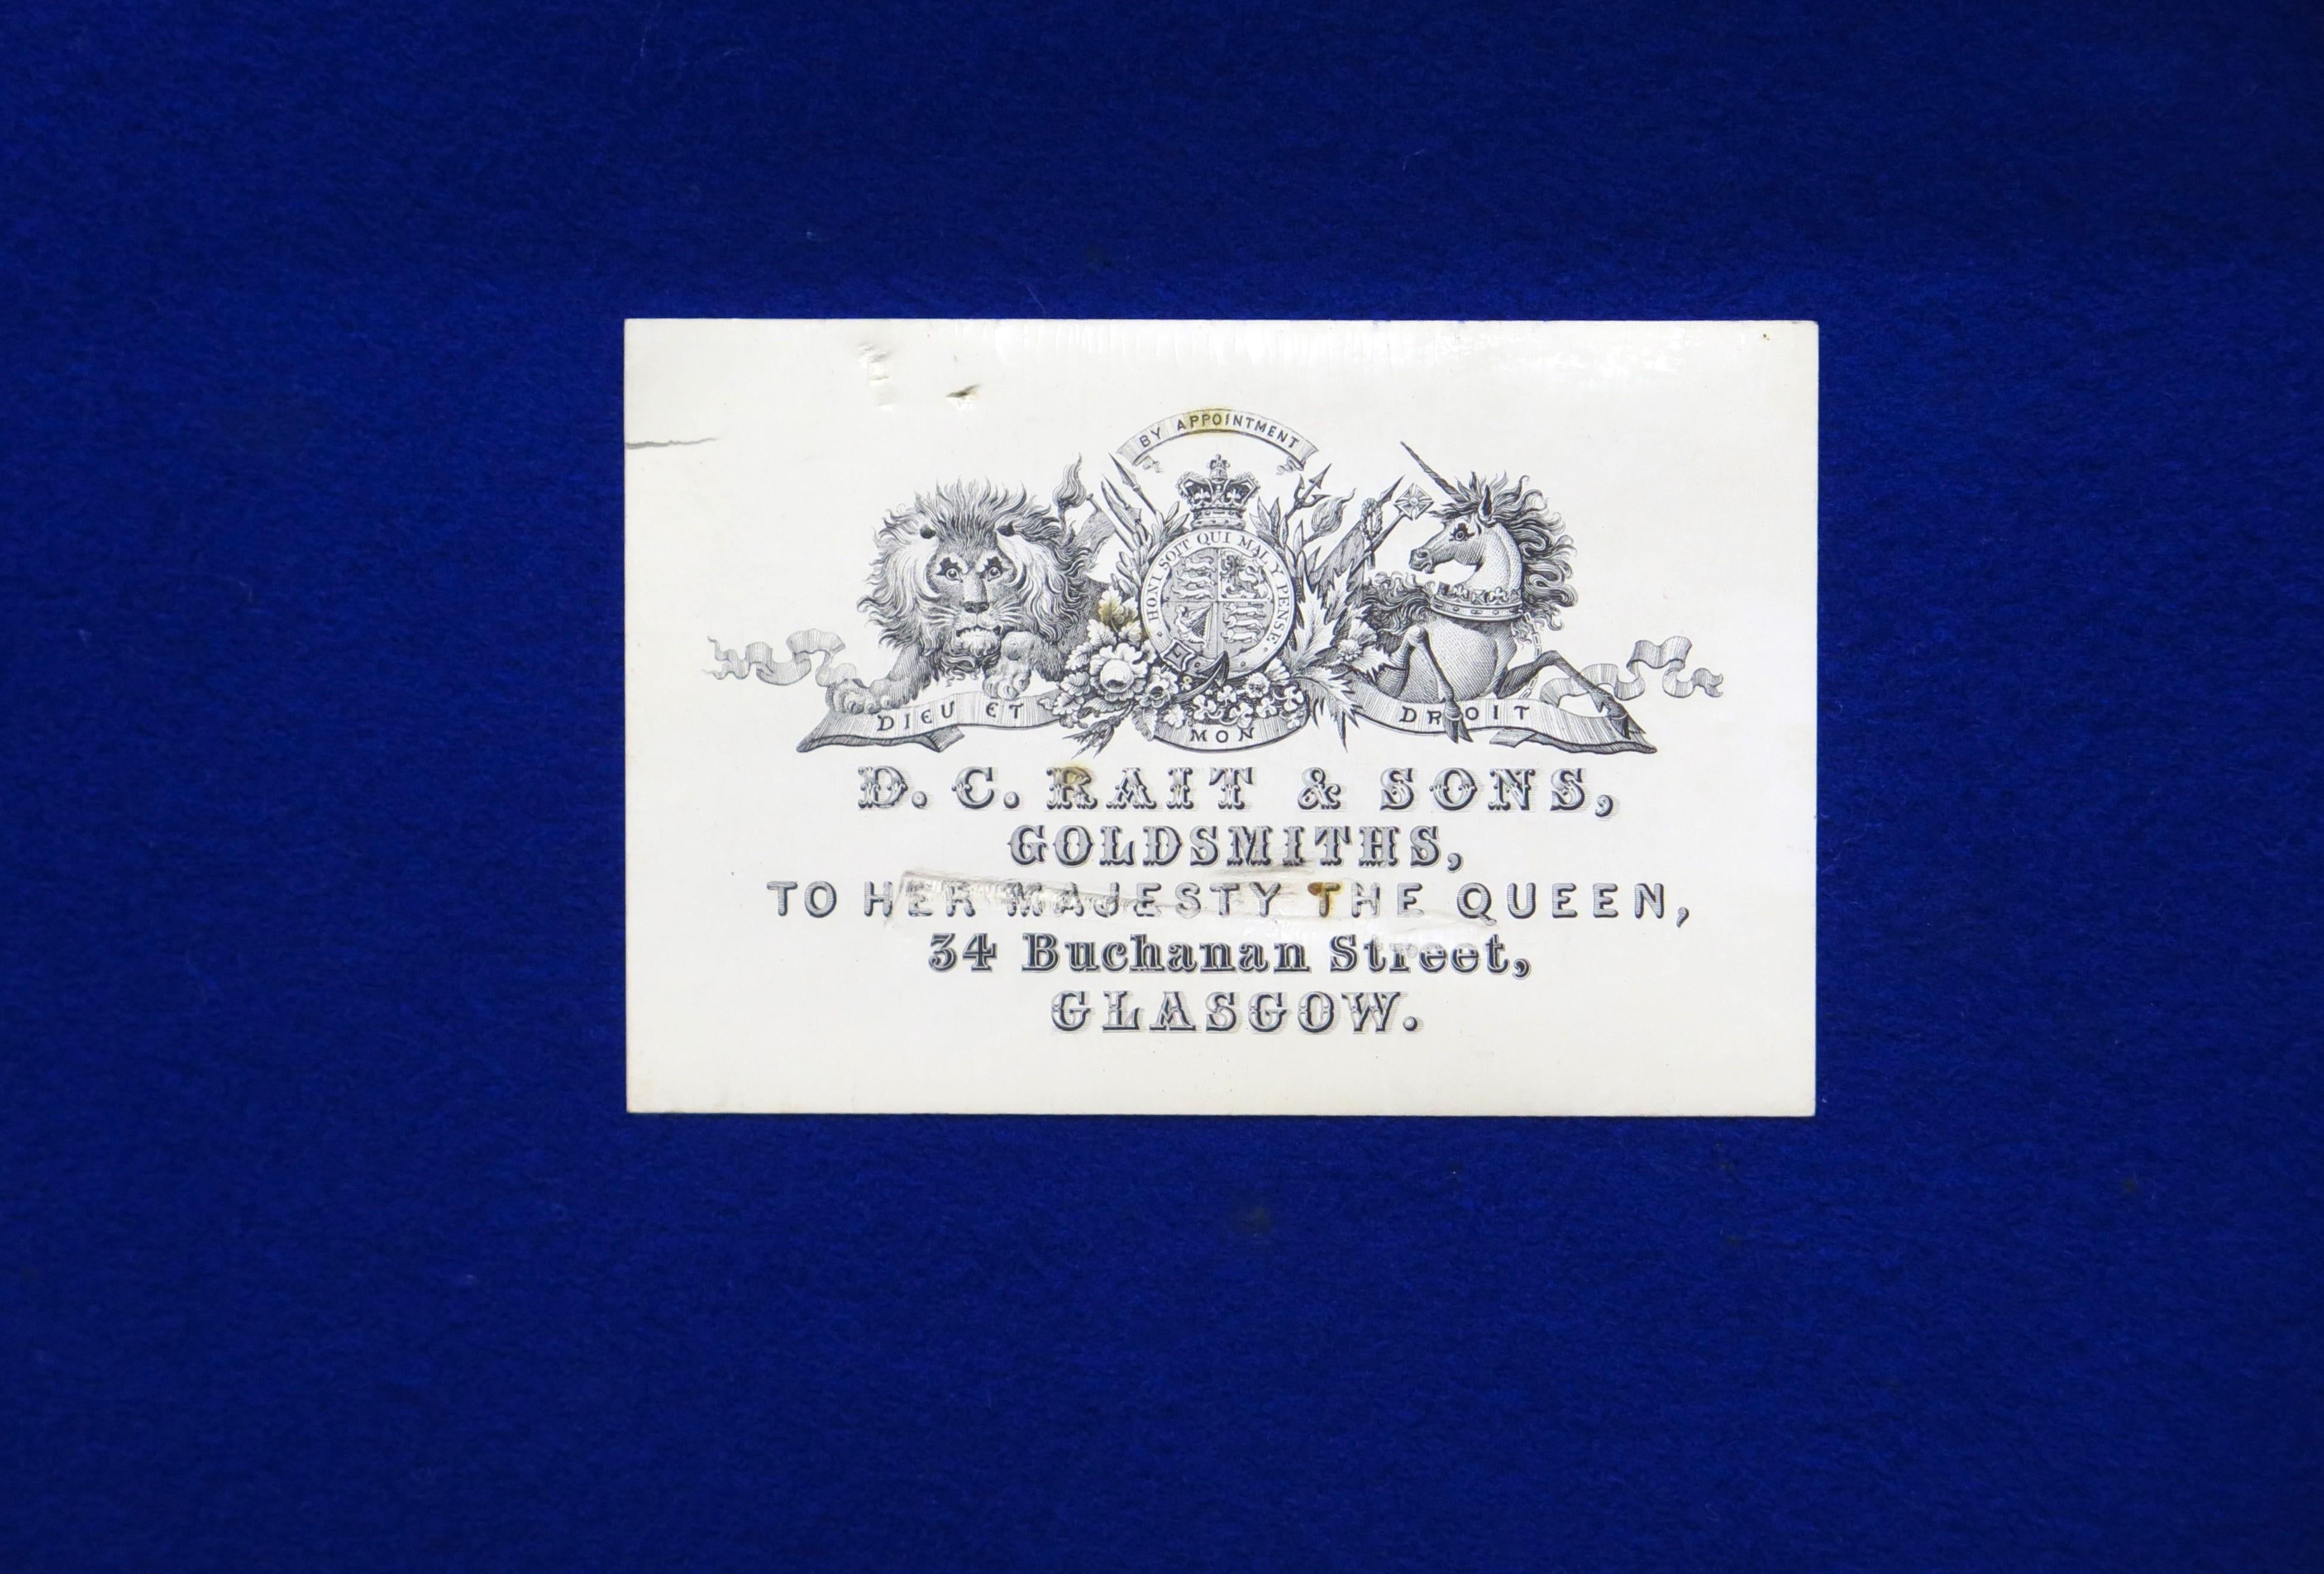 un coffre (boîte de rangement) en argent en chêne cerclé de fer d'A.I.C. Rait & Sons, Glasgow, présentés comme des orfèvres avec un mandat royal pour la Reine Victoria, 